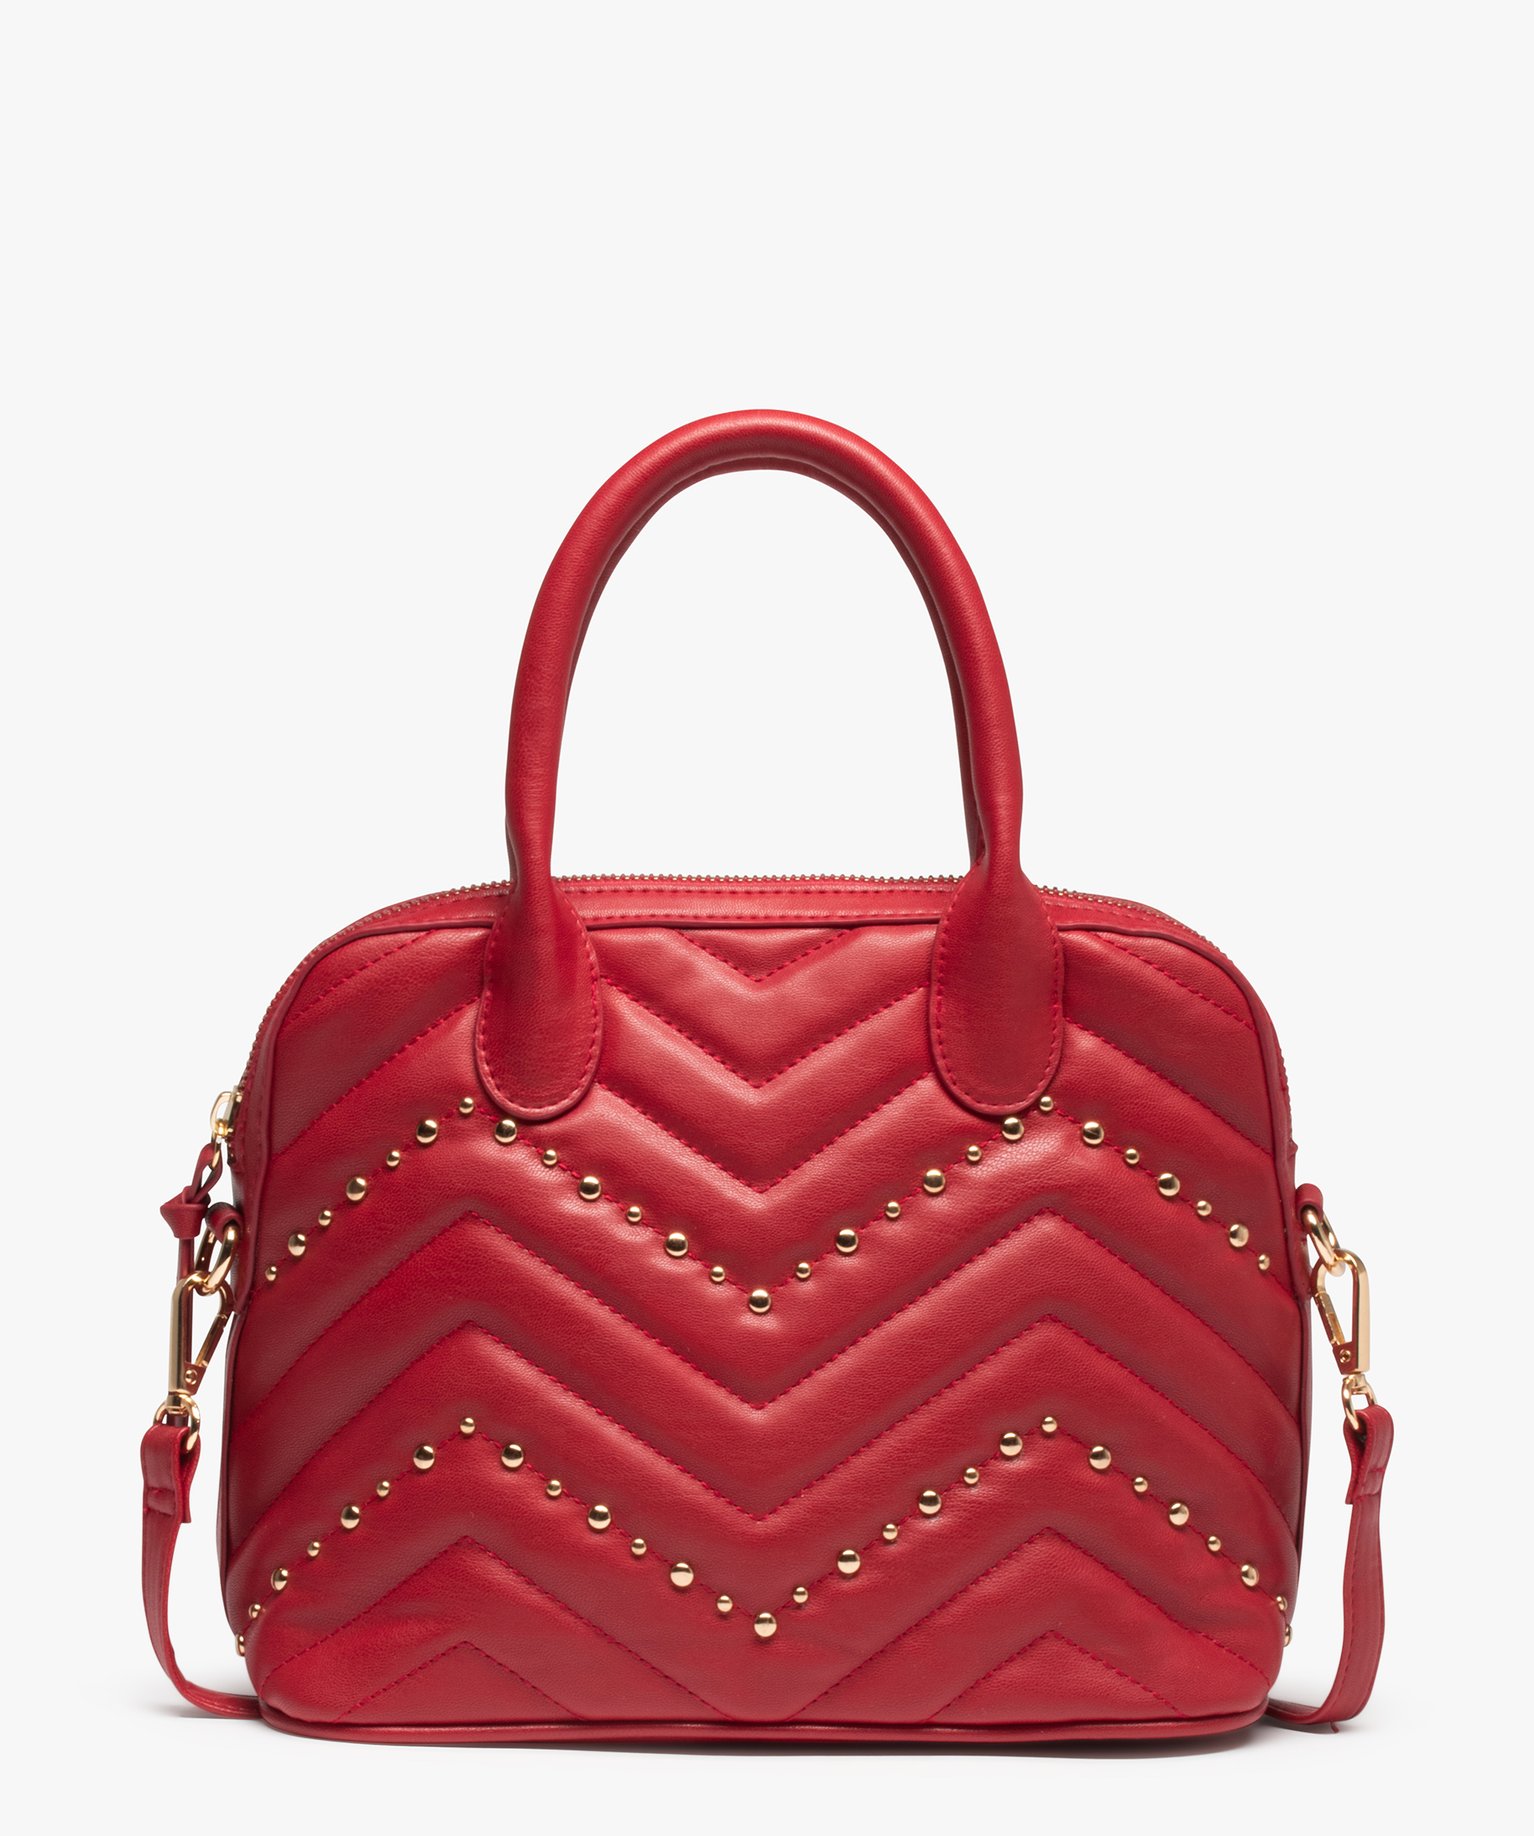 sac femme avec devant matelasse et clous metalliques rouge sacs a main